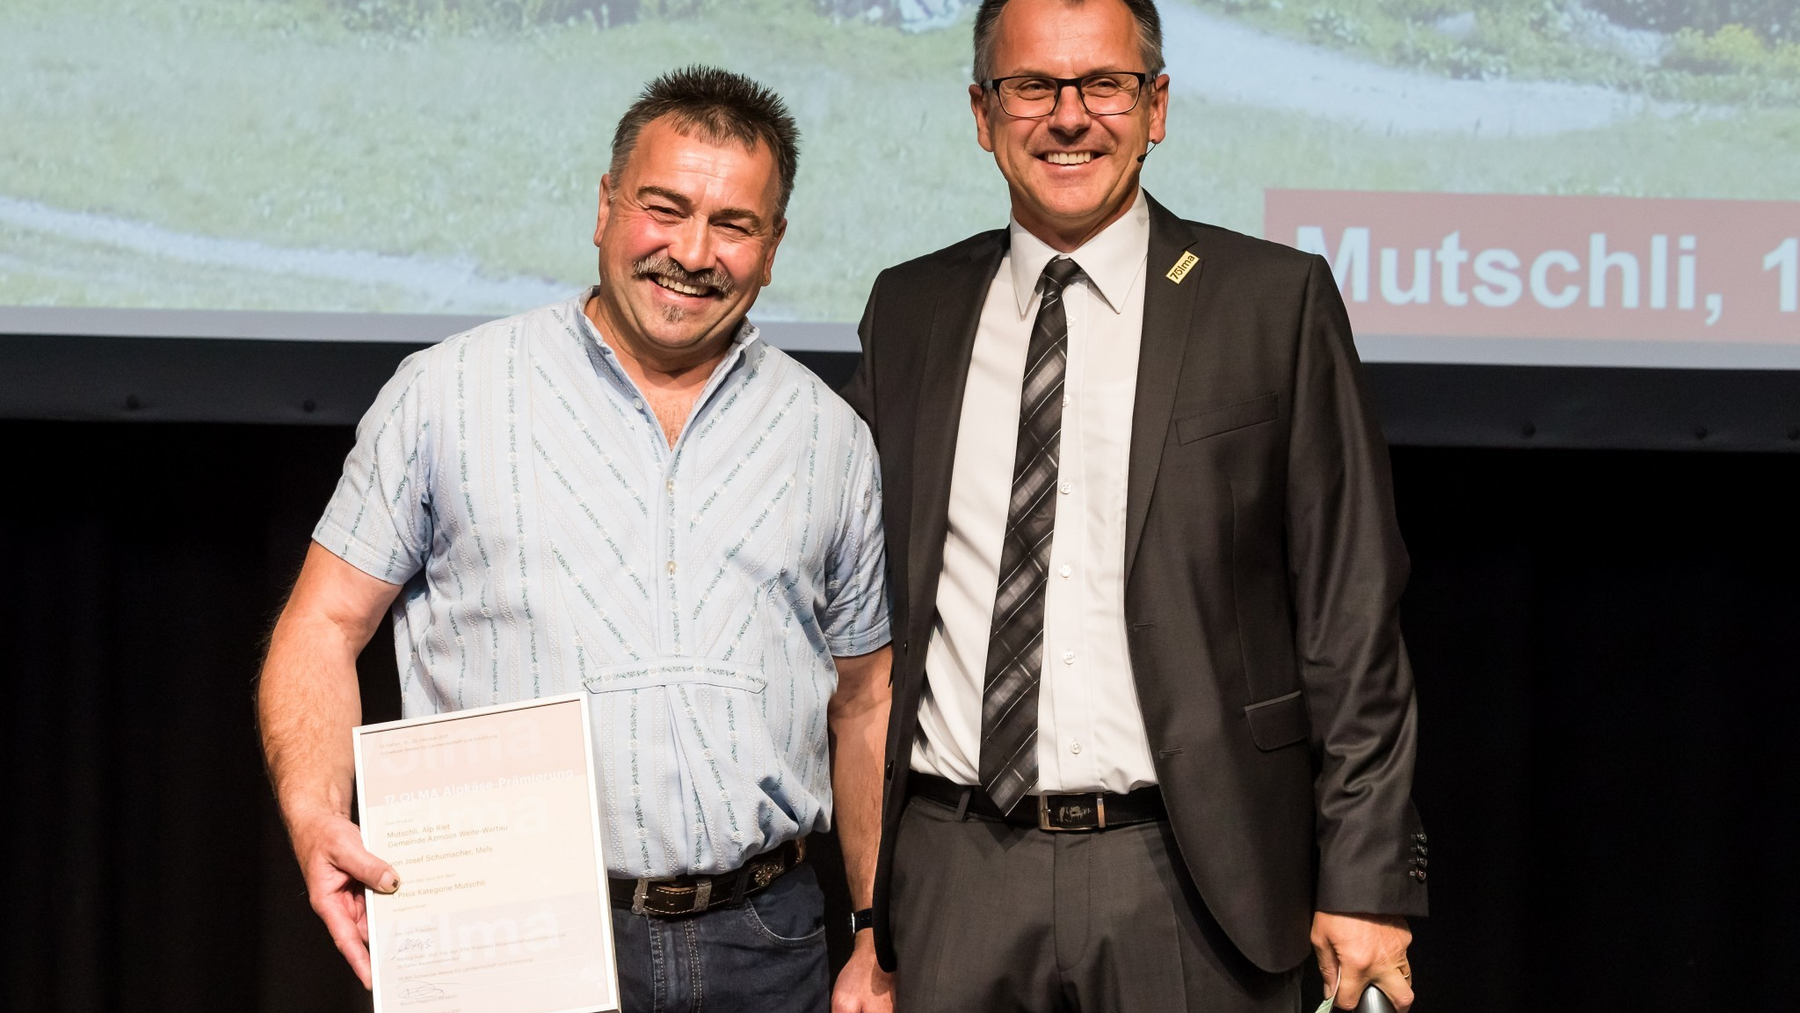 Josef Schumacher aus Mels (l.) gewinnt in der Kategorie «Mutschli» den ersten Preis